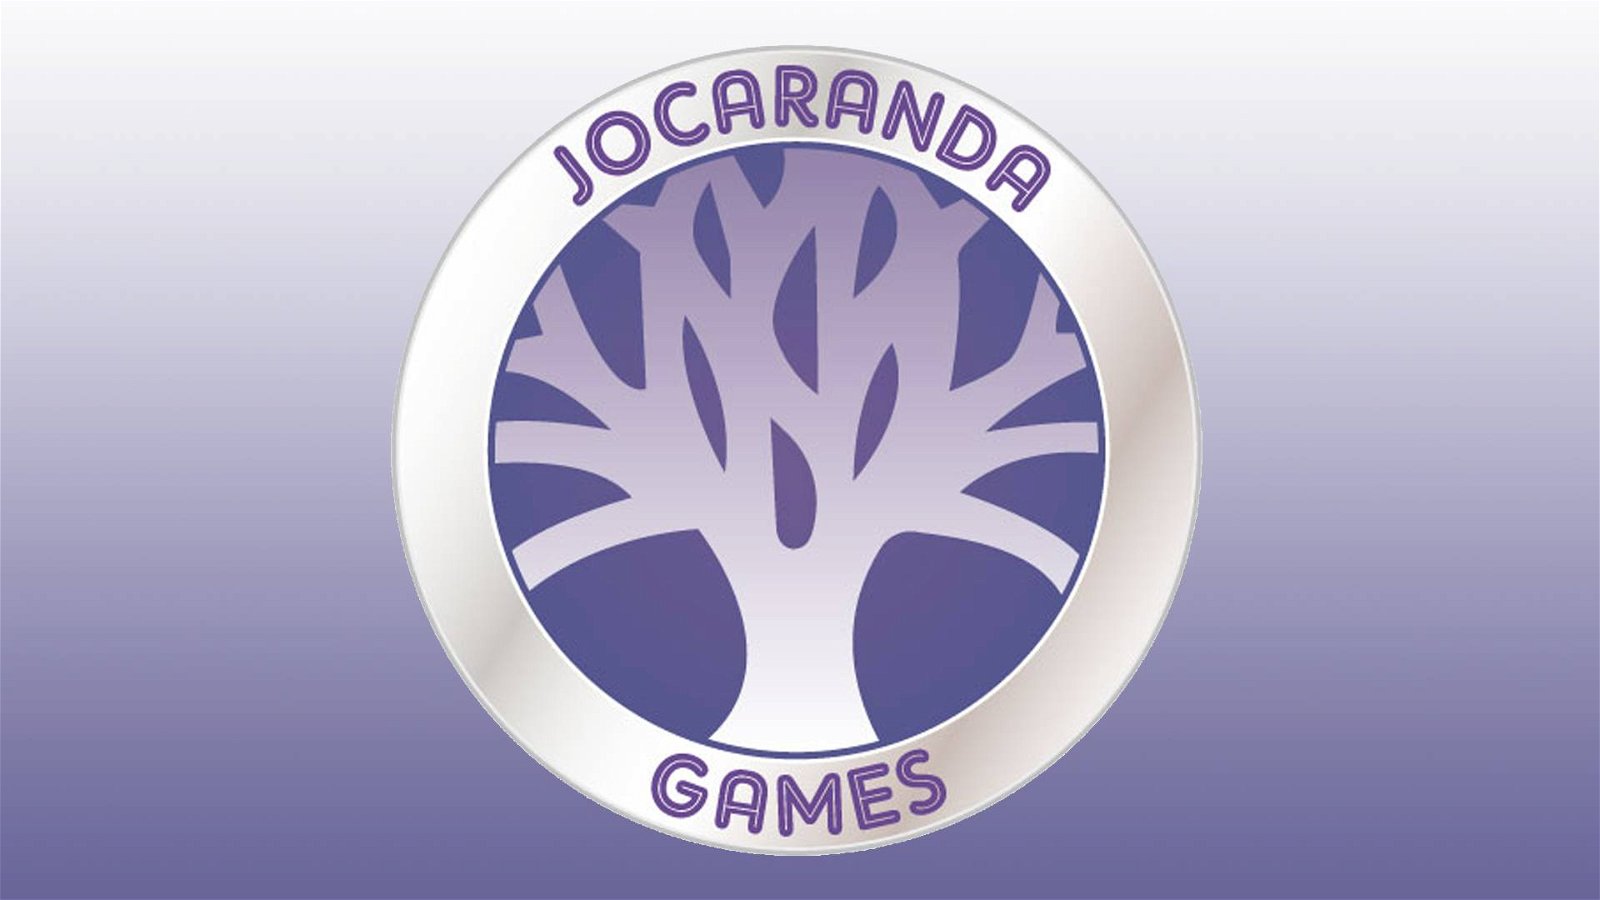 Immagine di Jocaranda Games: giochi per famiglie per riscoprire il piacere del gioco